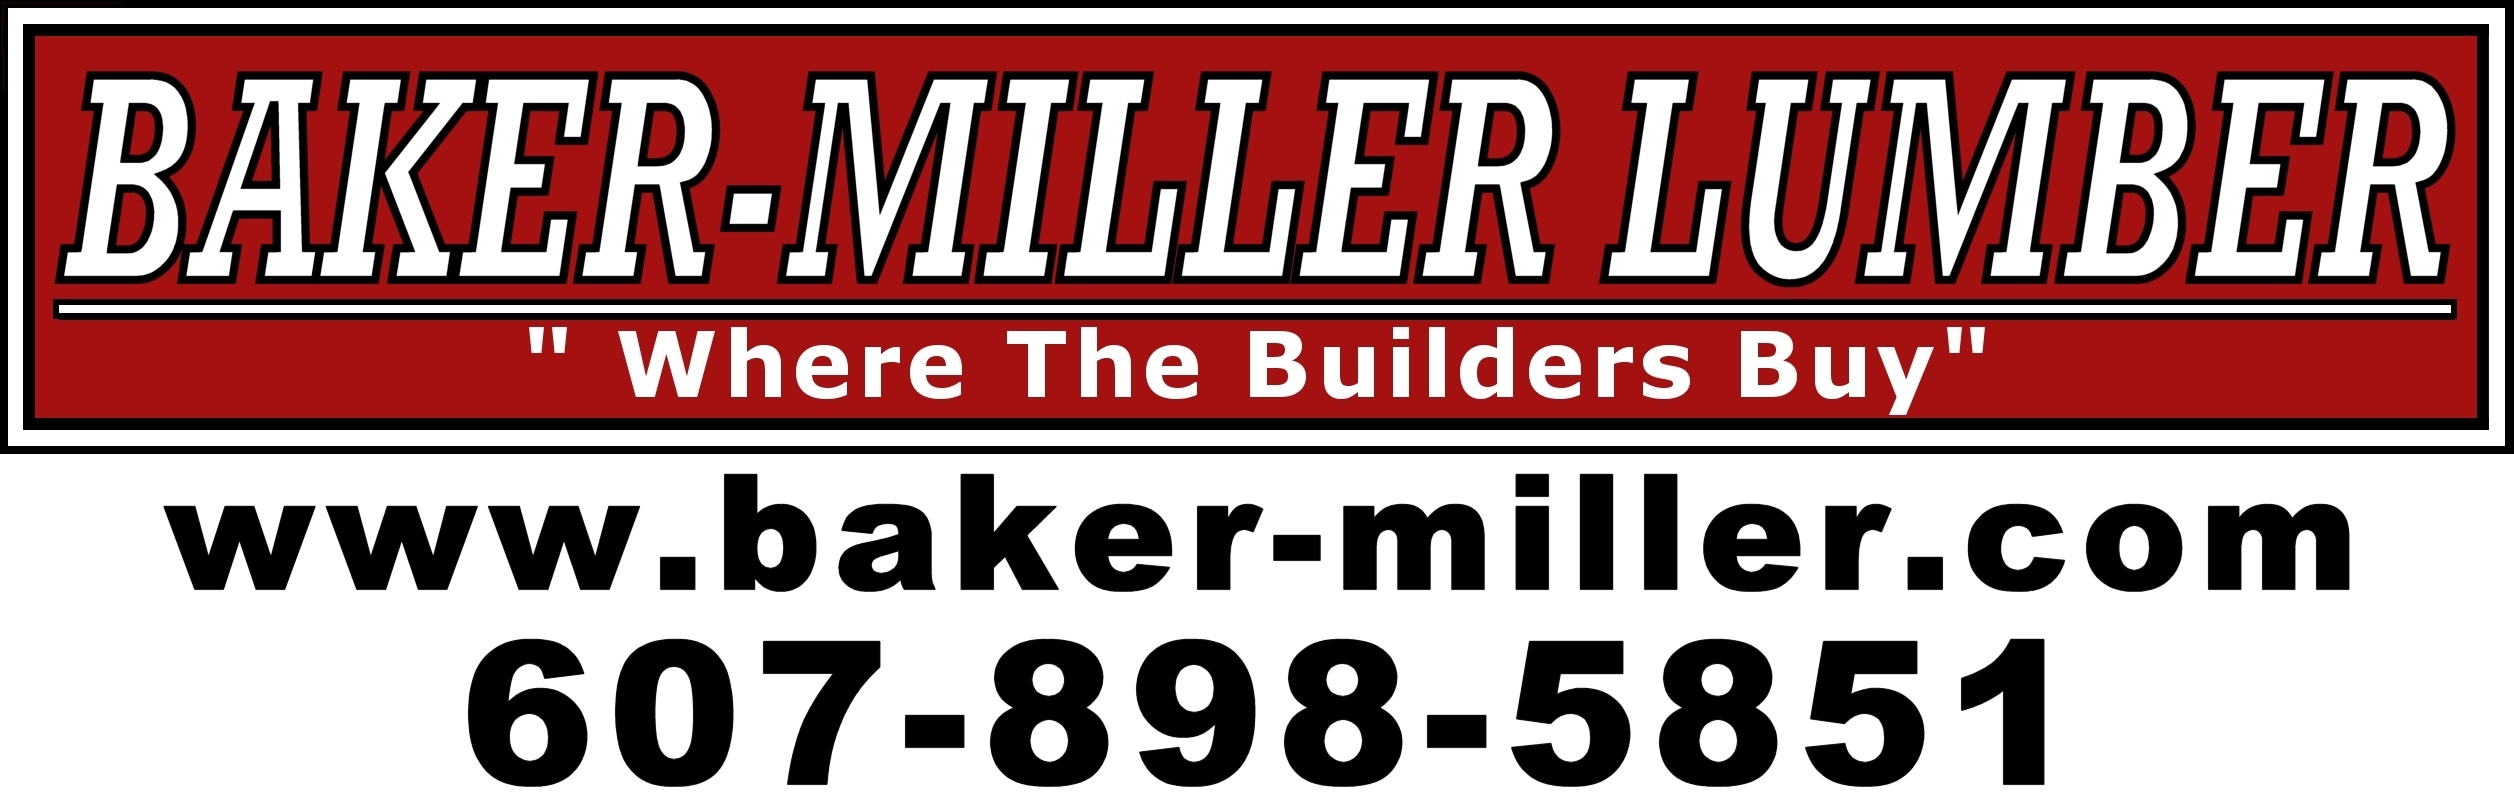 BAKER-MILLER LUMBER, INC logo